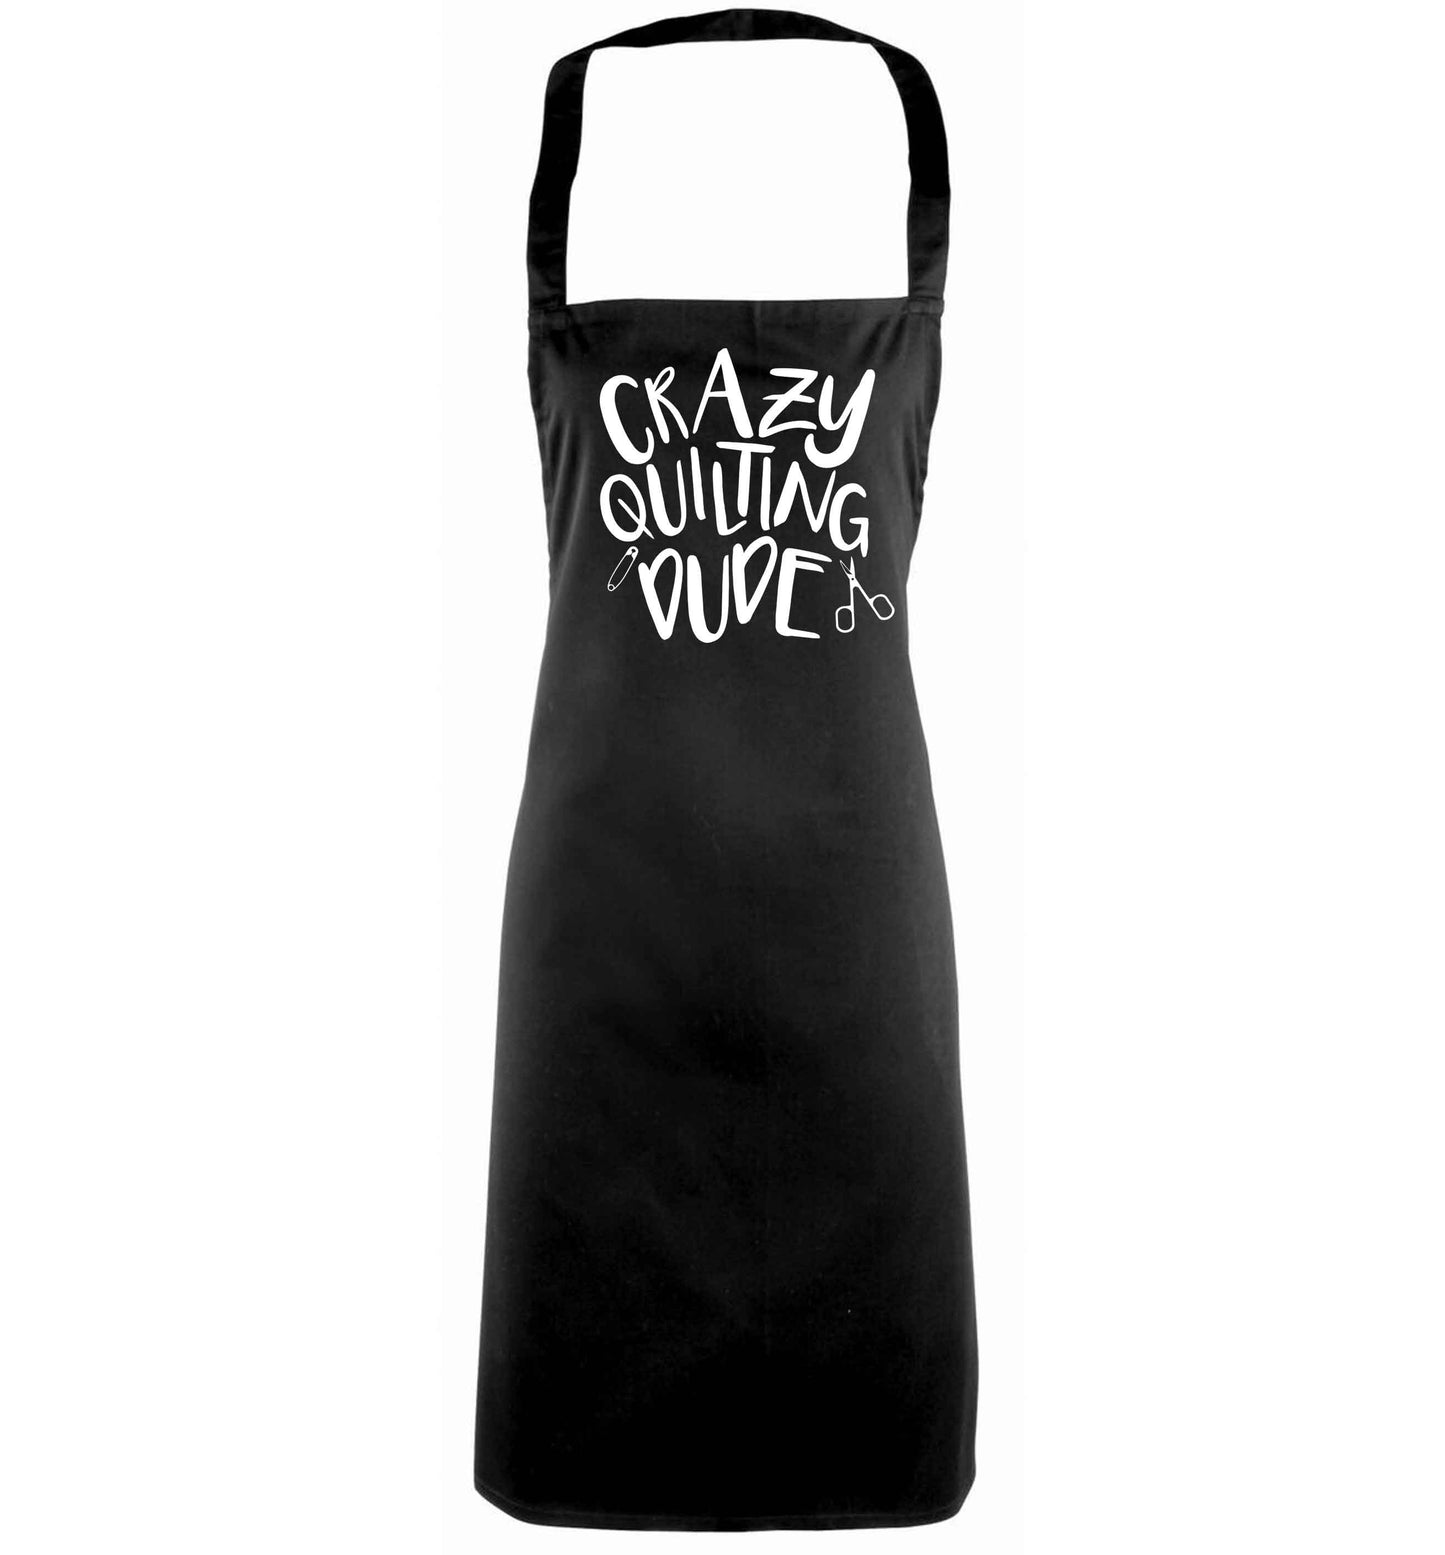 Crazy quilting dude black apron